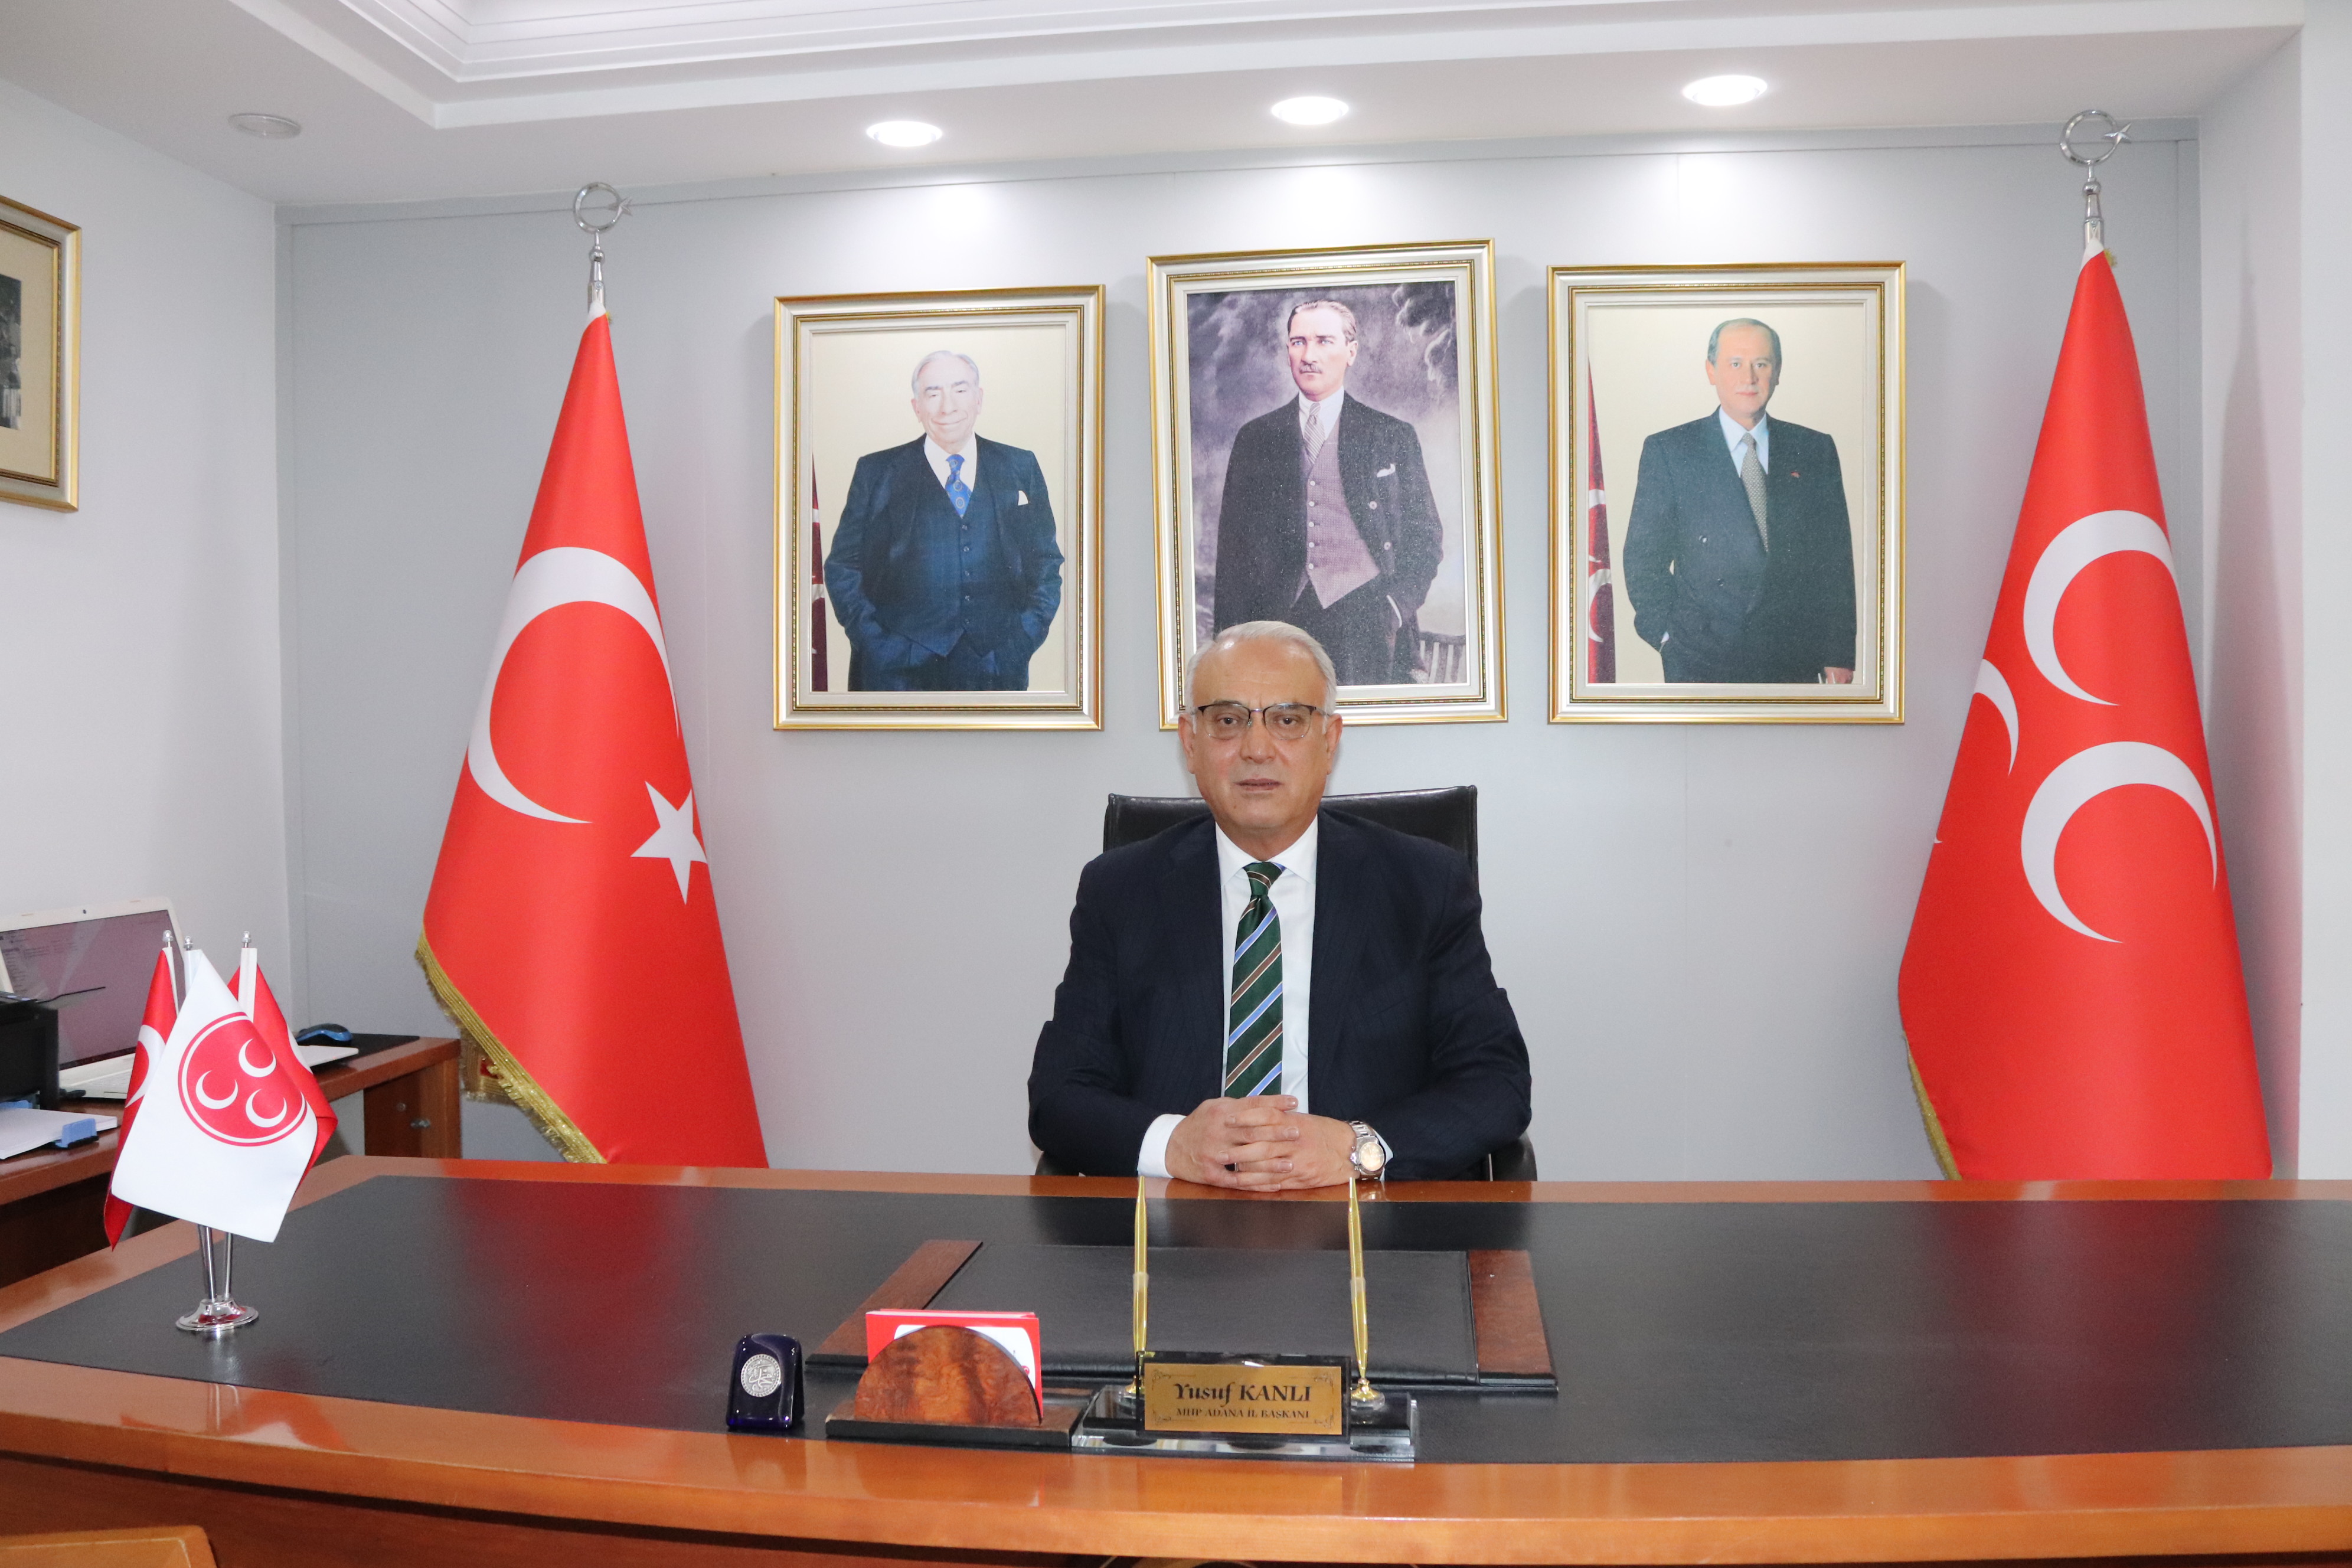 MHP Adana İl Başkanı Yusuf Kanlı, Türk Polis Teşkilatı’nın 179. kuruluş yıl dönümünü kutladı.